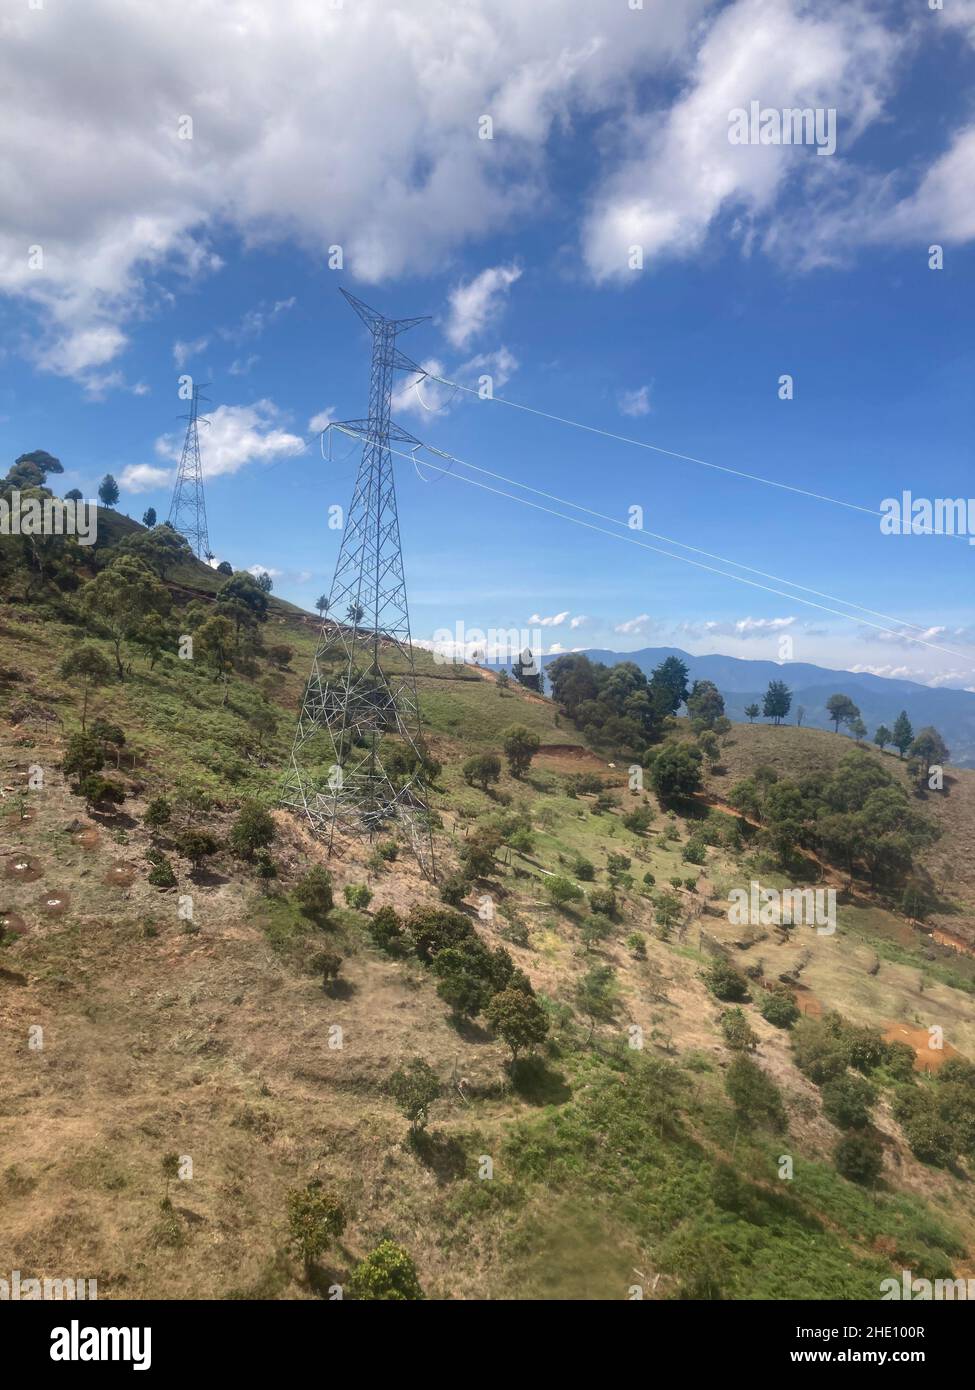 Connected Elettricità Pylons nelle montagne vicino a molti alberi e piante in una bella giornata di sole Foto Stock